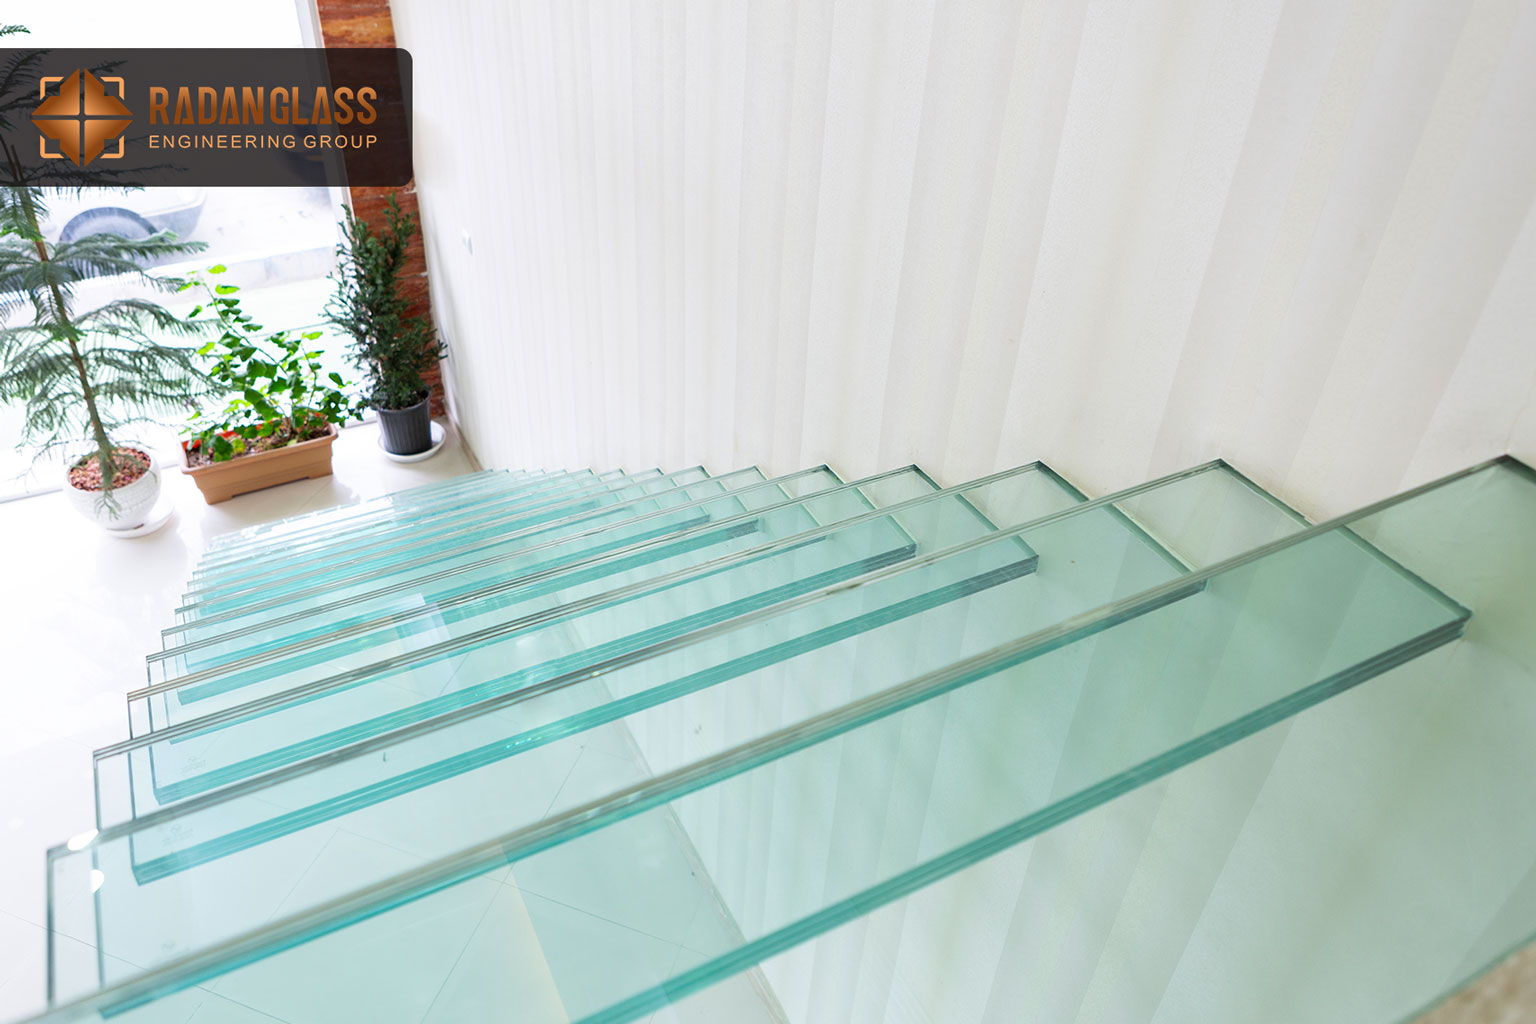 کف پله های شیشه ای - پروژه تالار پدیده میلاد